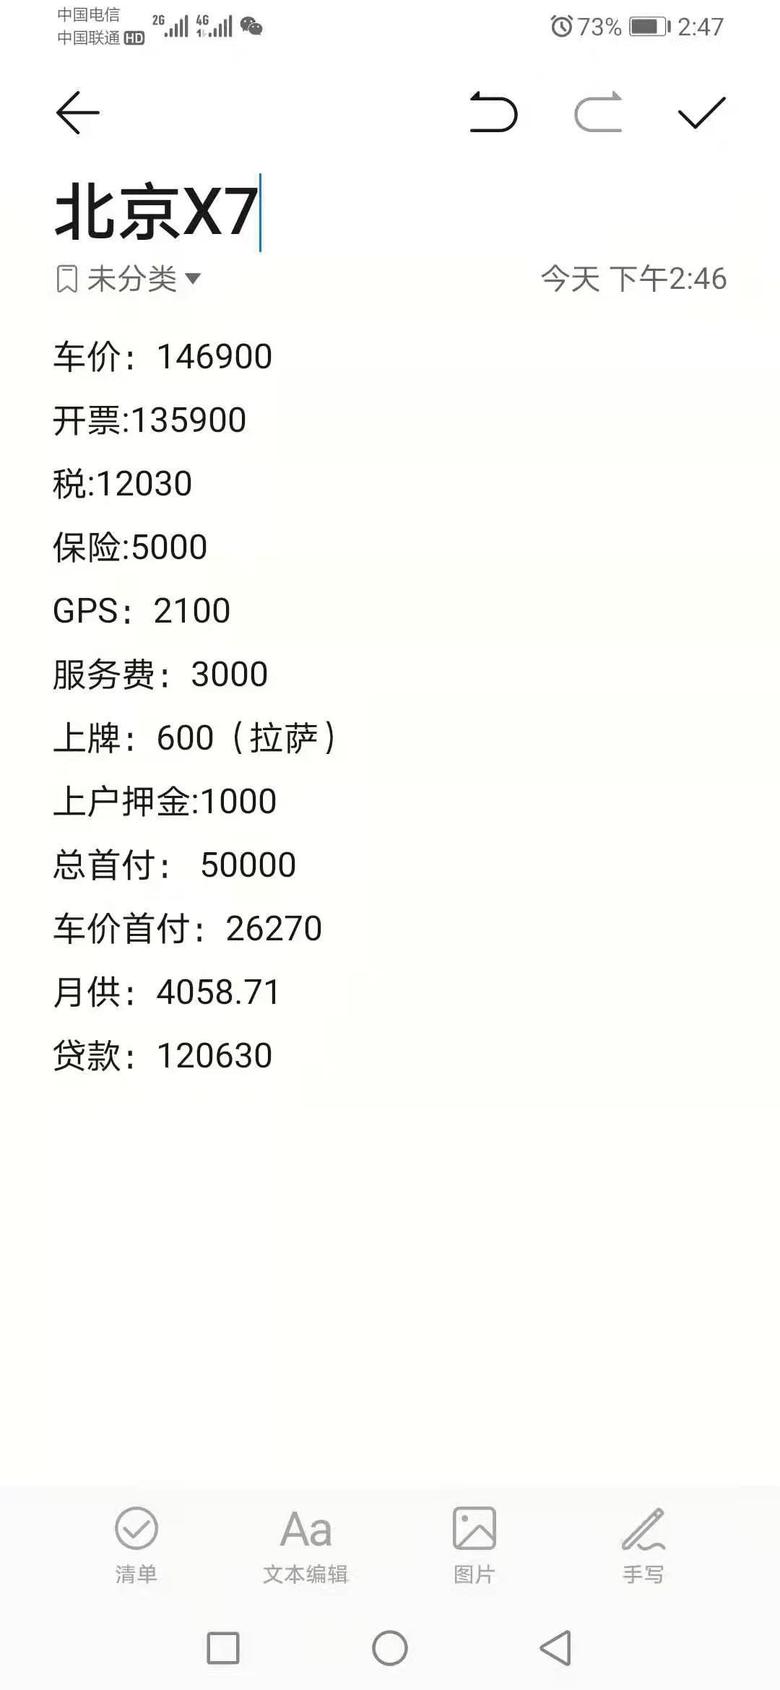 北京x7 各位车主看看我这个贵不贵，还有上户押金和GPS是什么意思？